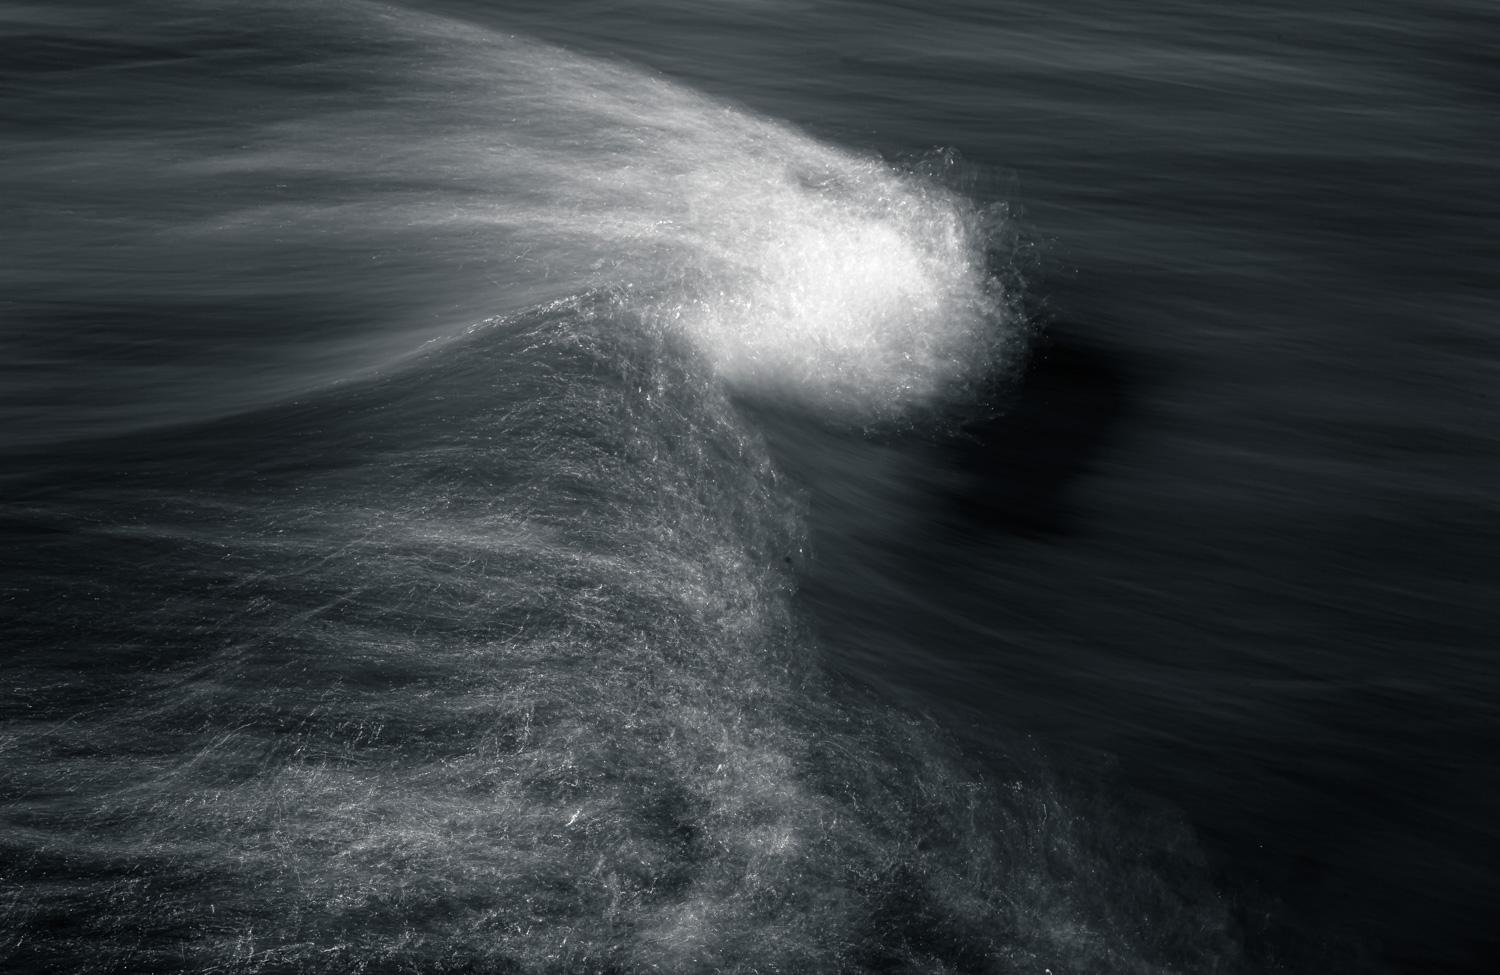 Black and White Photograph Howard Lewis - Waves - Photographie éthérée océanique en noir et blanc n° 12 